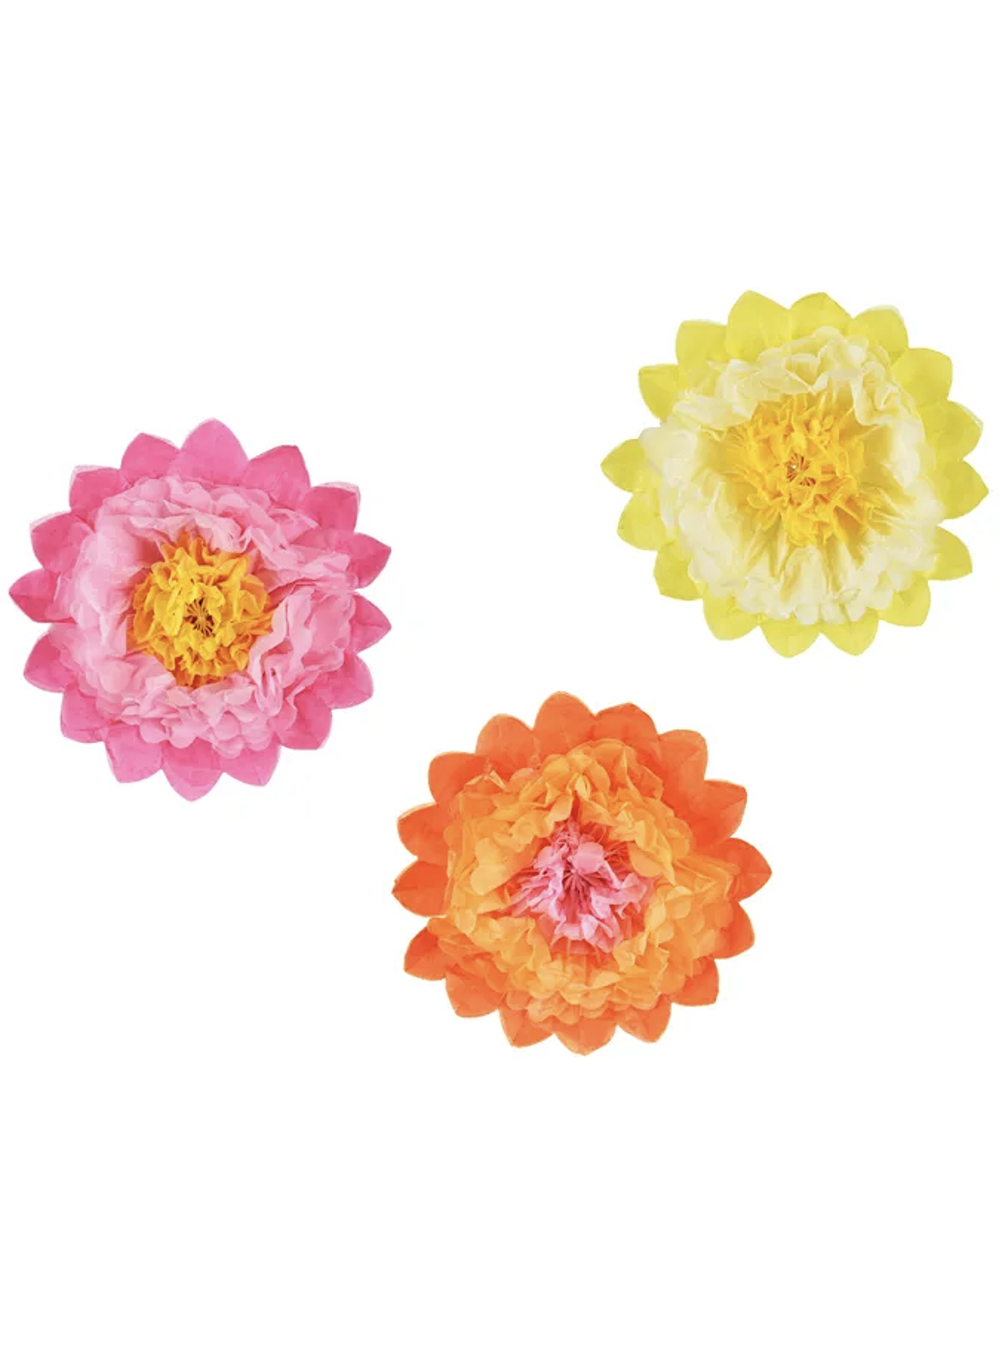 Tissuepaper Πολύχρωμα Λουλούδια (3τμχ)